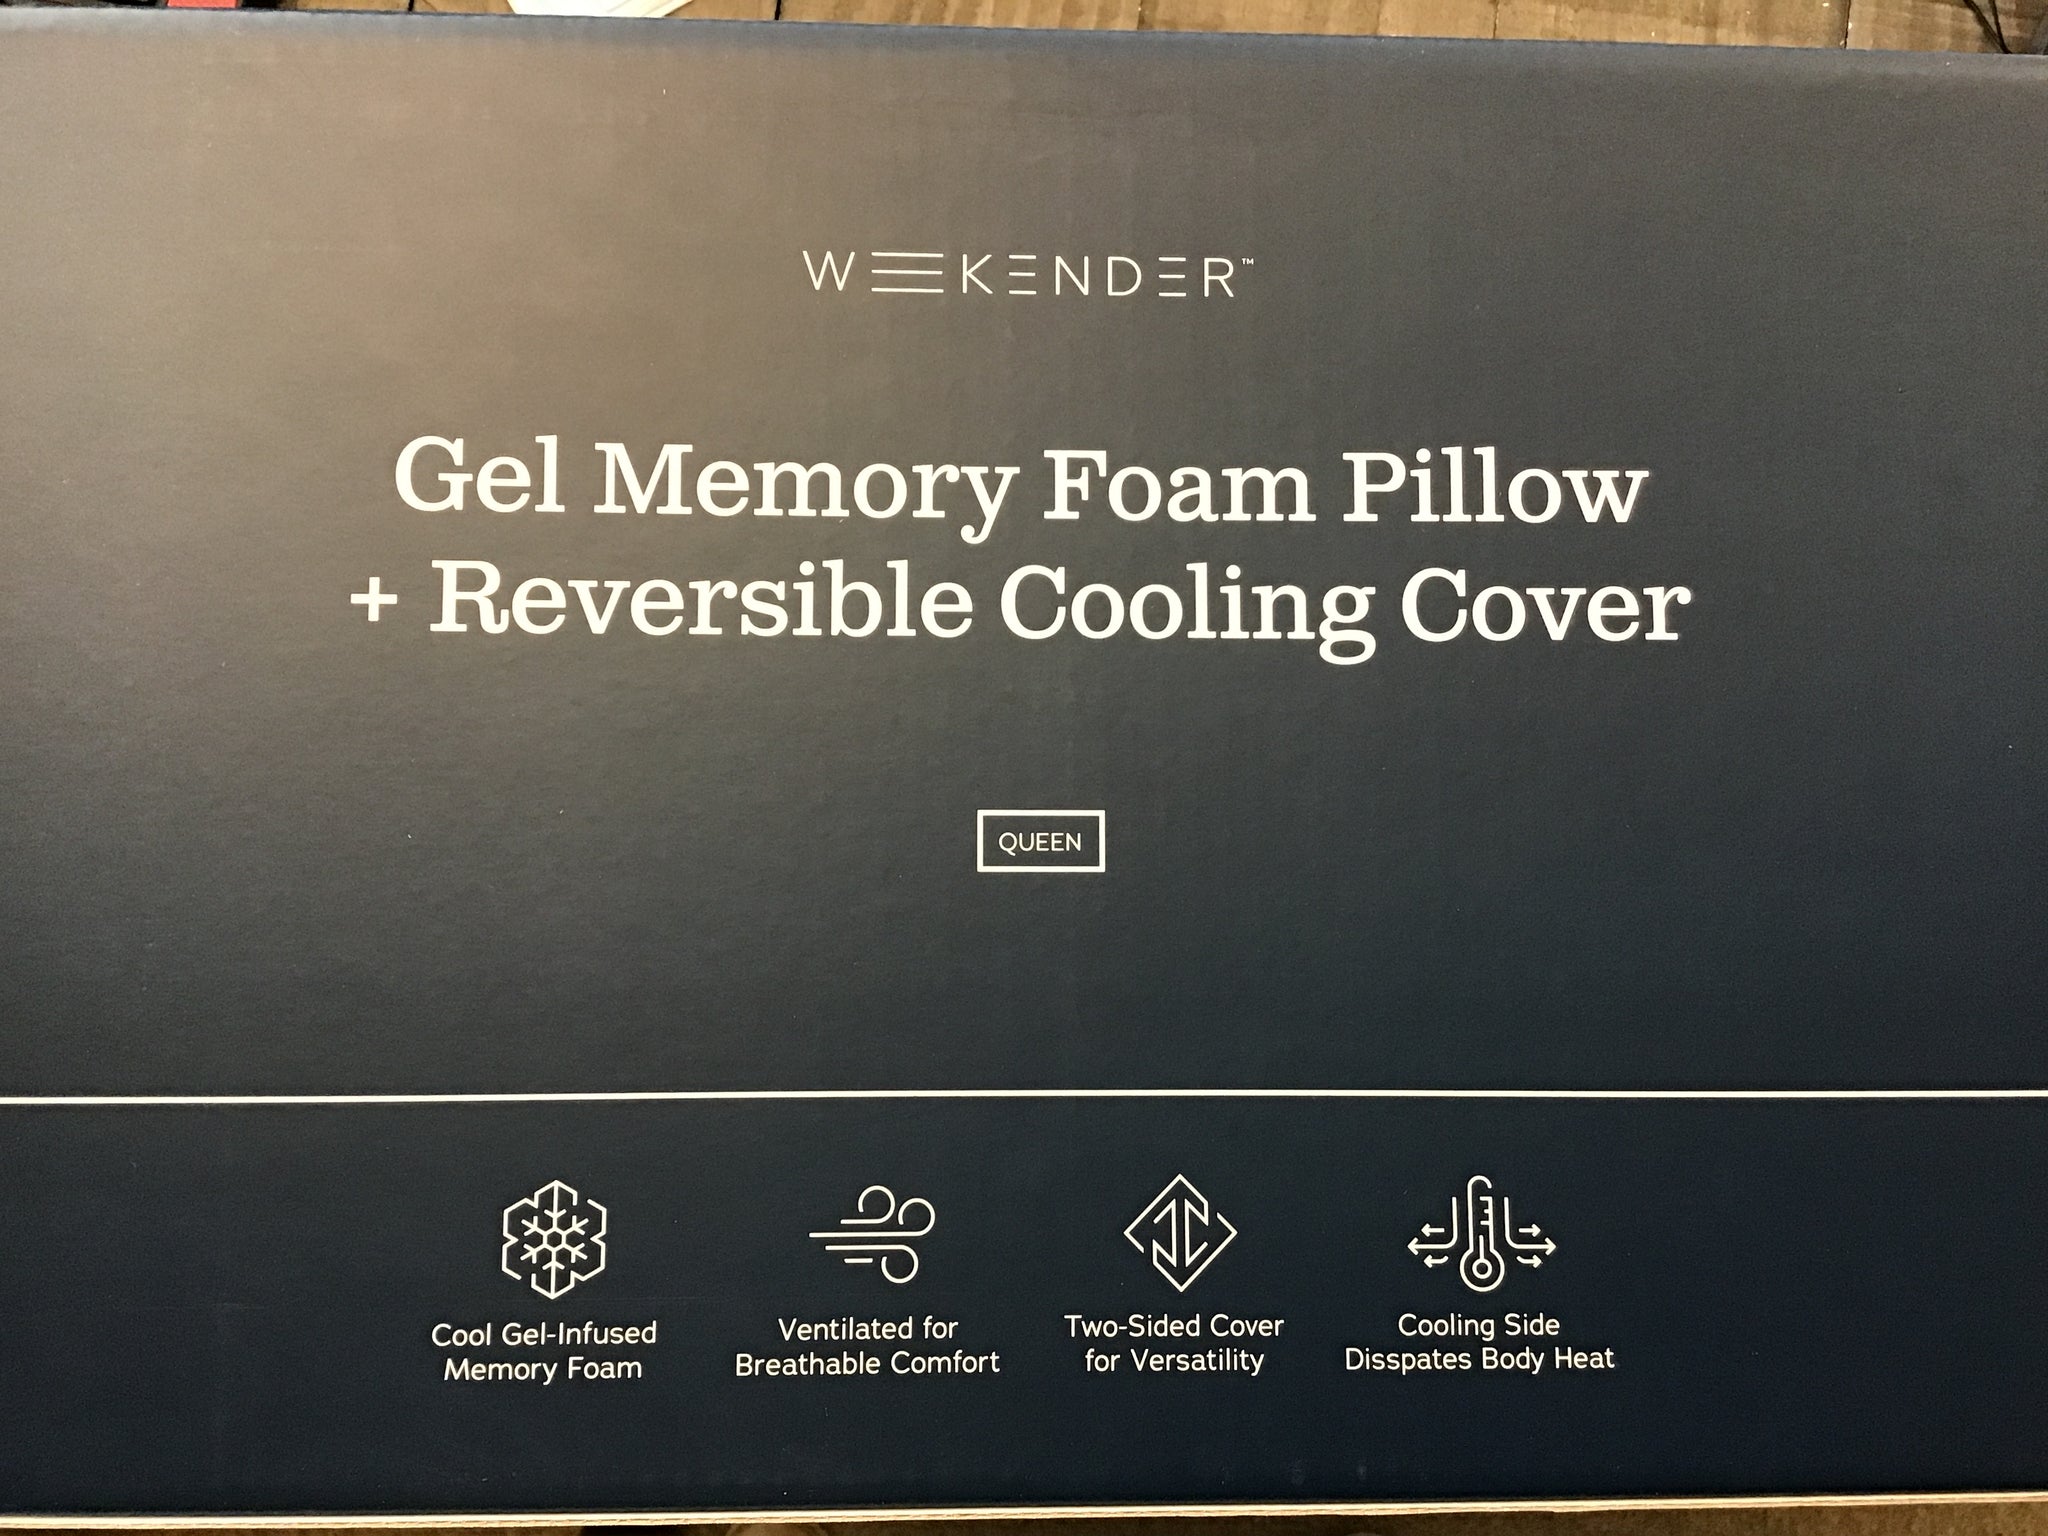 Weekender Cooling Gel Memory Foam Pillow